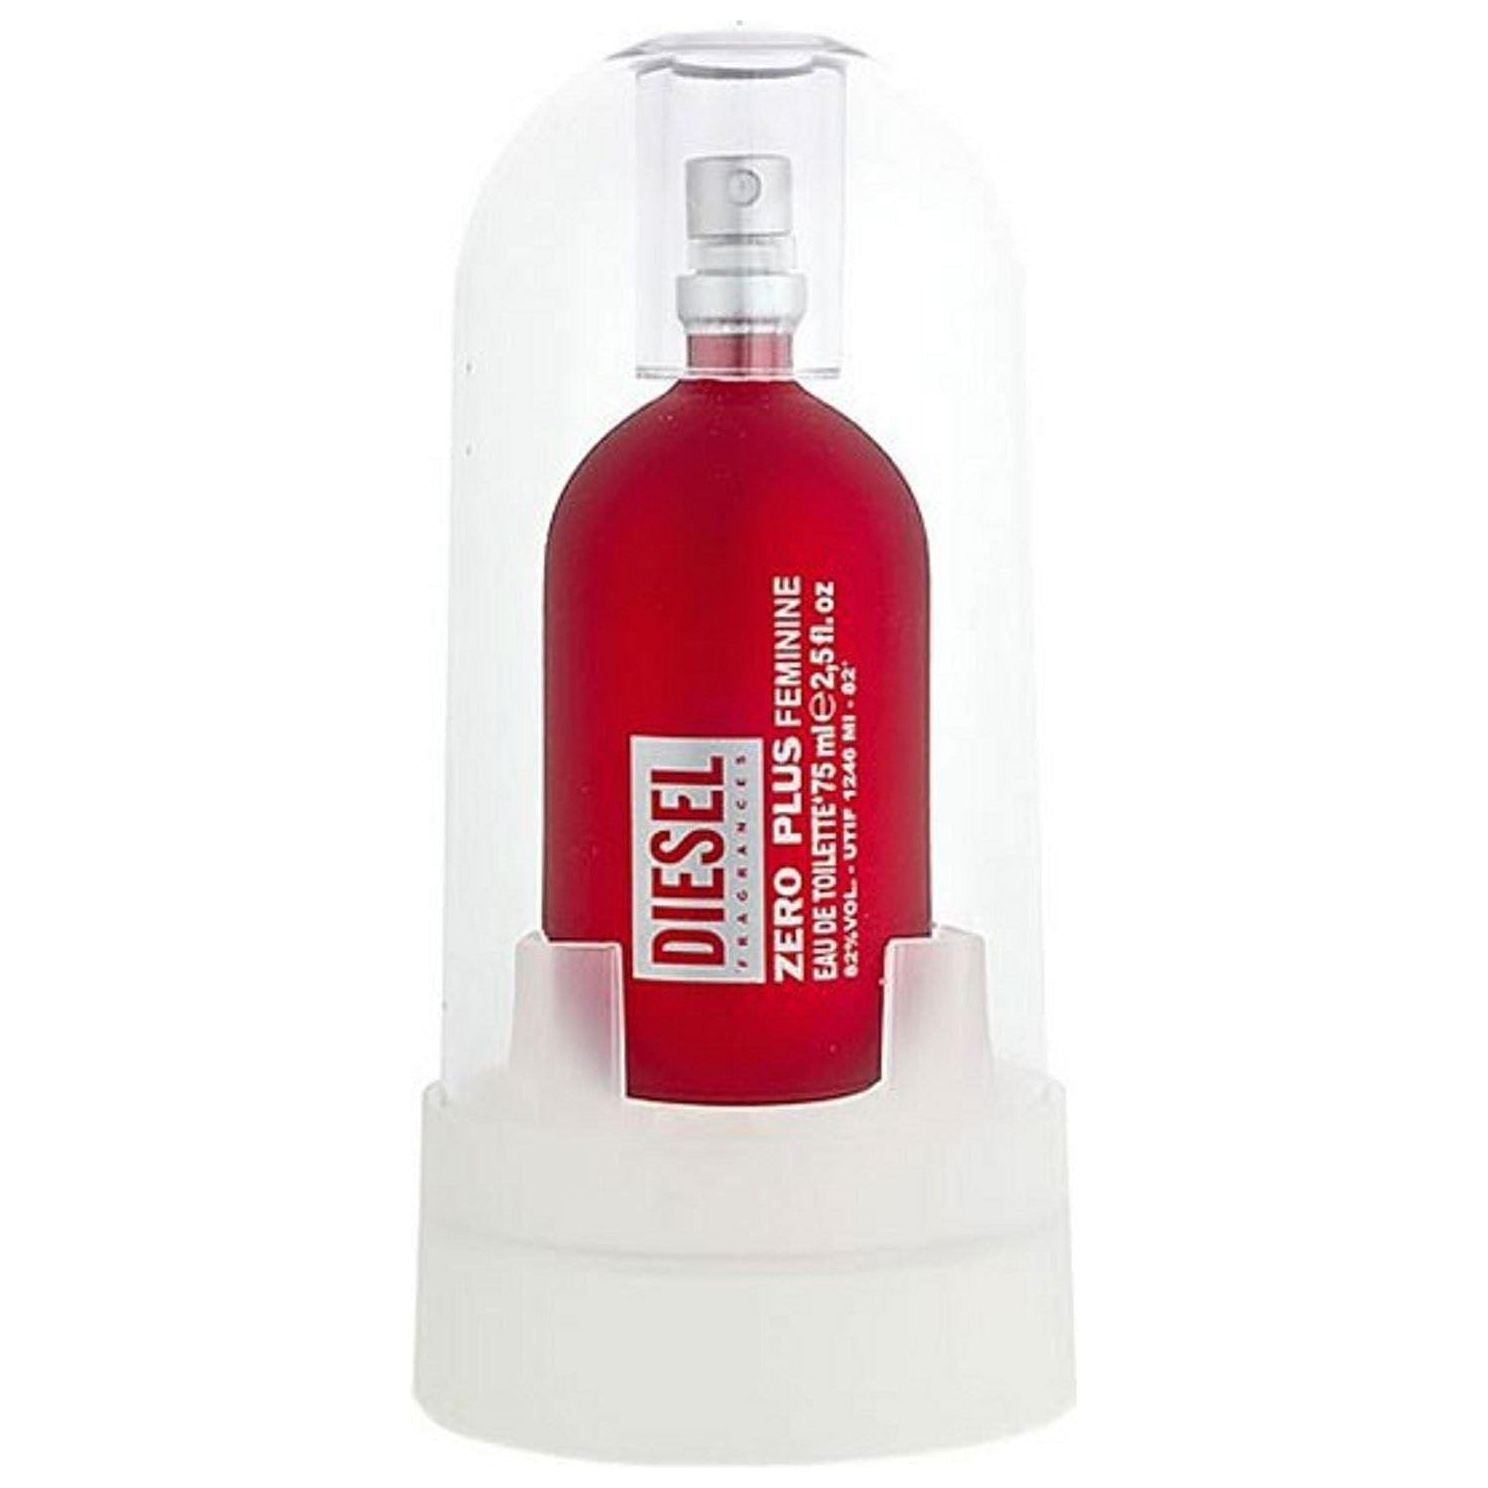 diesel perfume red bottle